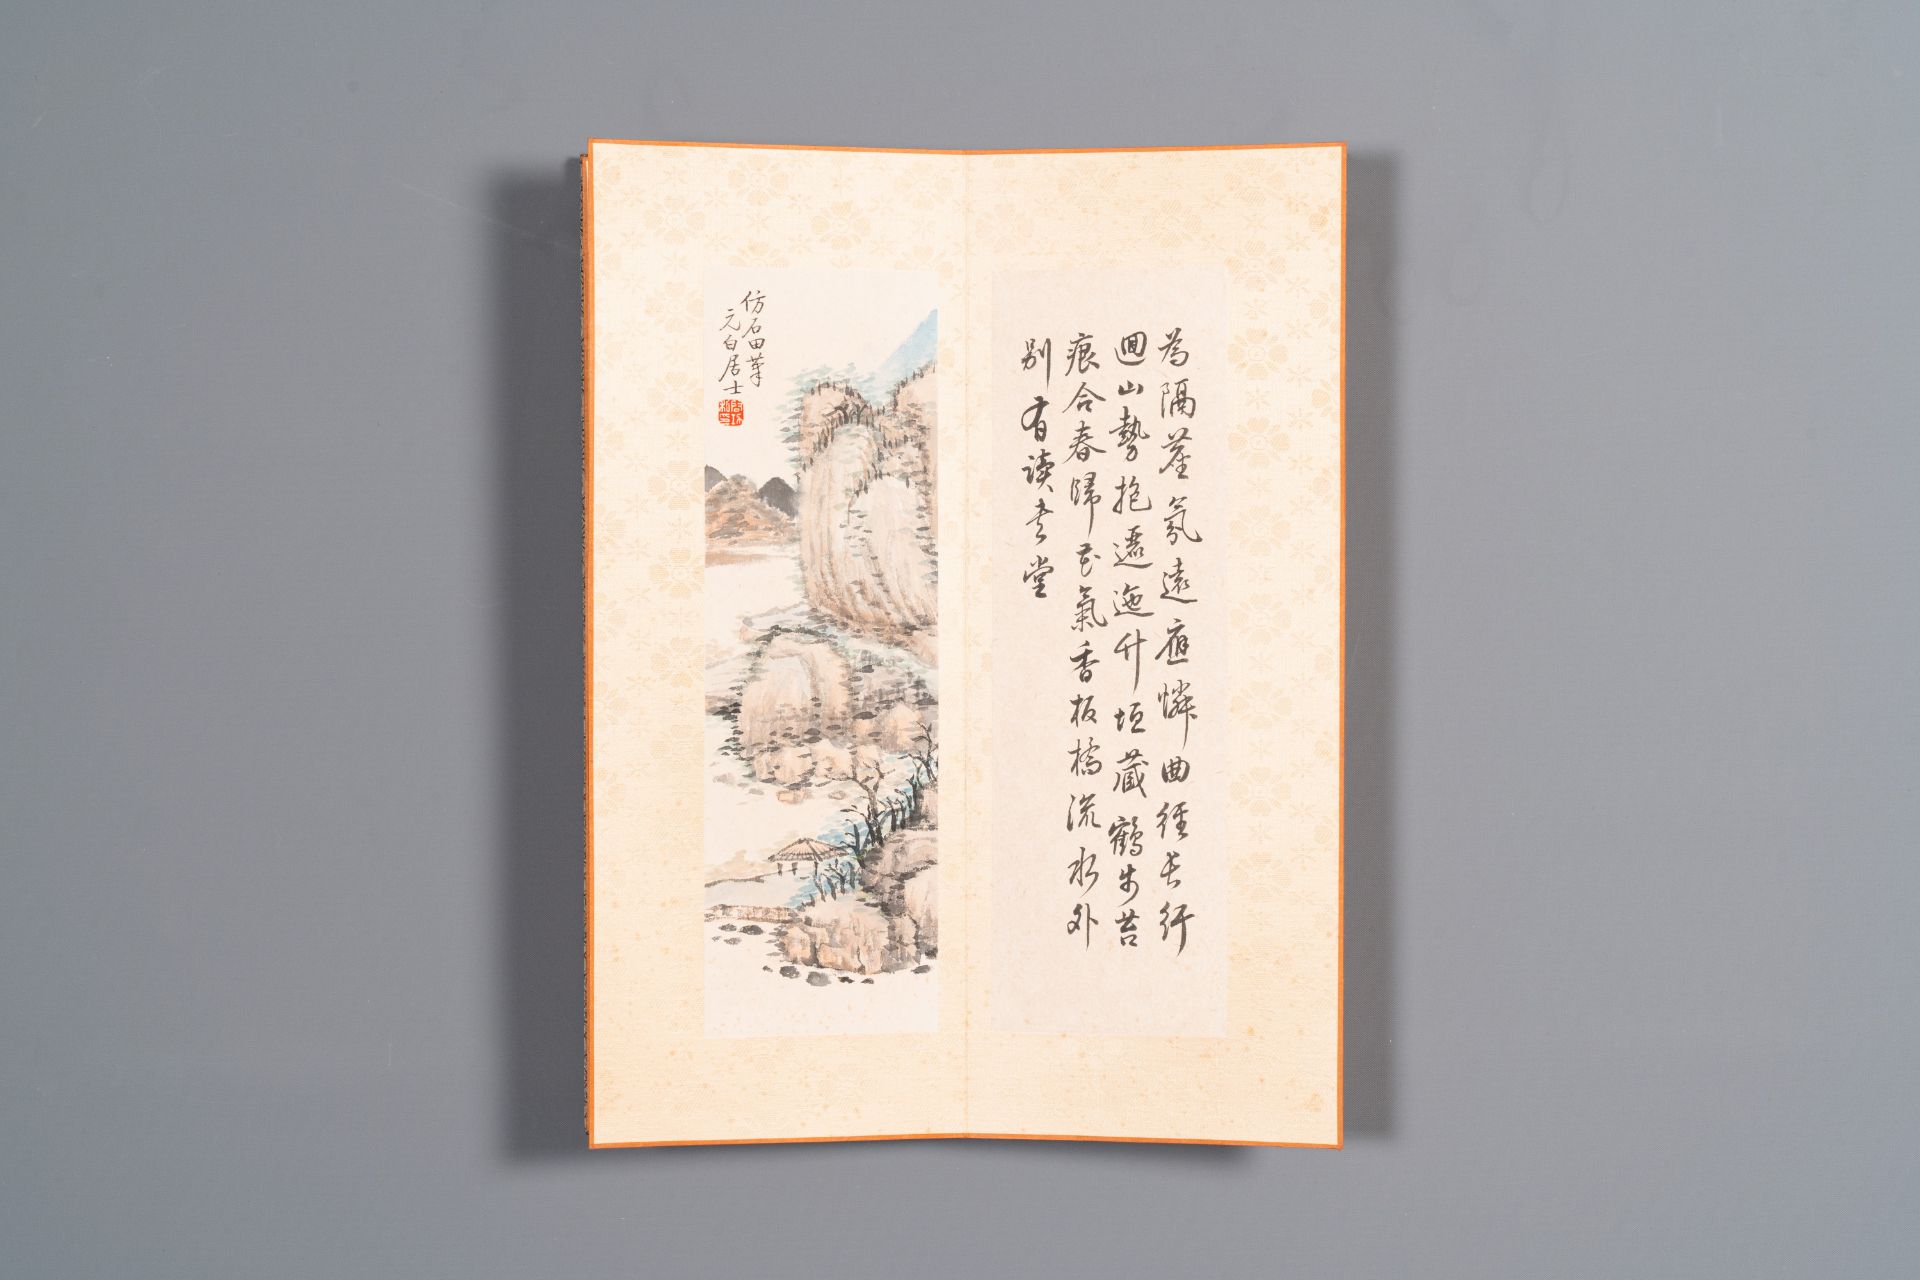 Three albums: 'Jiang Hanting æ±Ÿå¯’æ±€ (1904-1963), Lin Sanzhi æž—æ•£ä¹‹ (1898-1989) and Qi Gong å¯ - Bild 22 aus 23